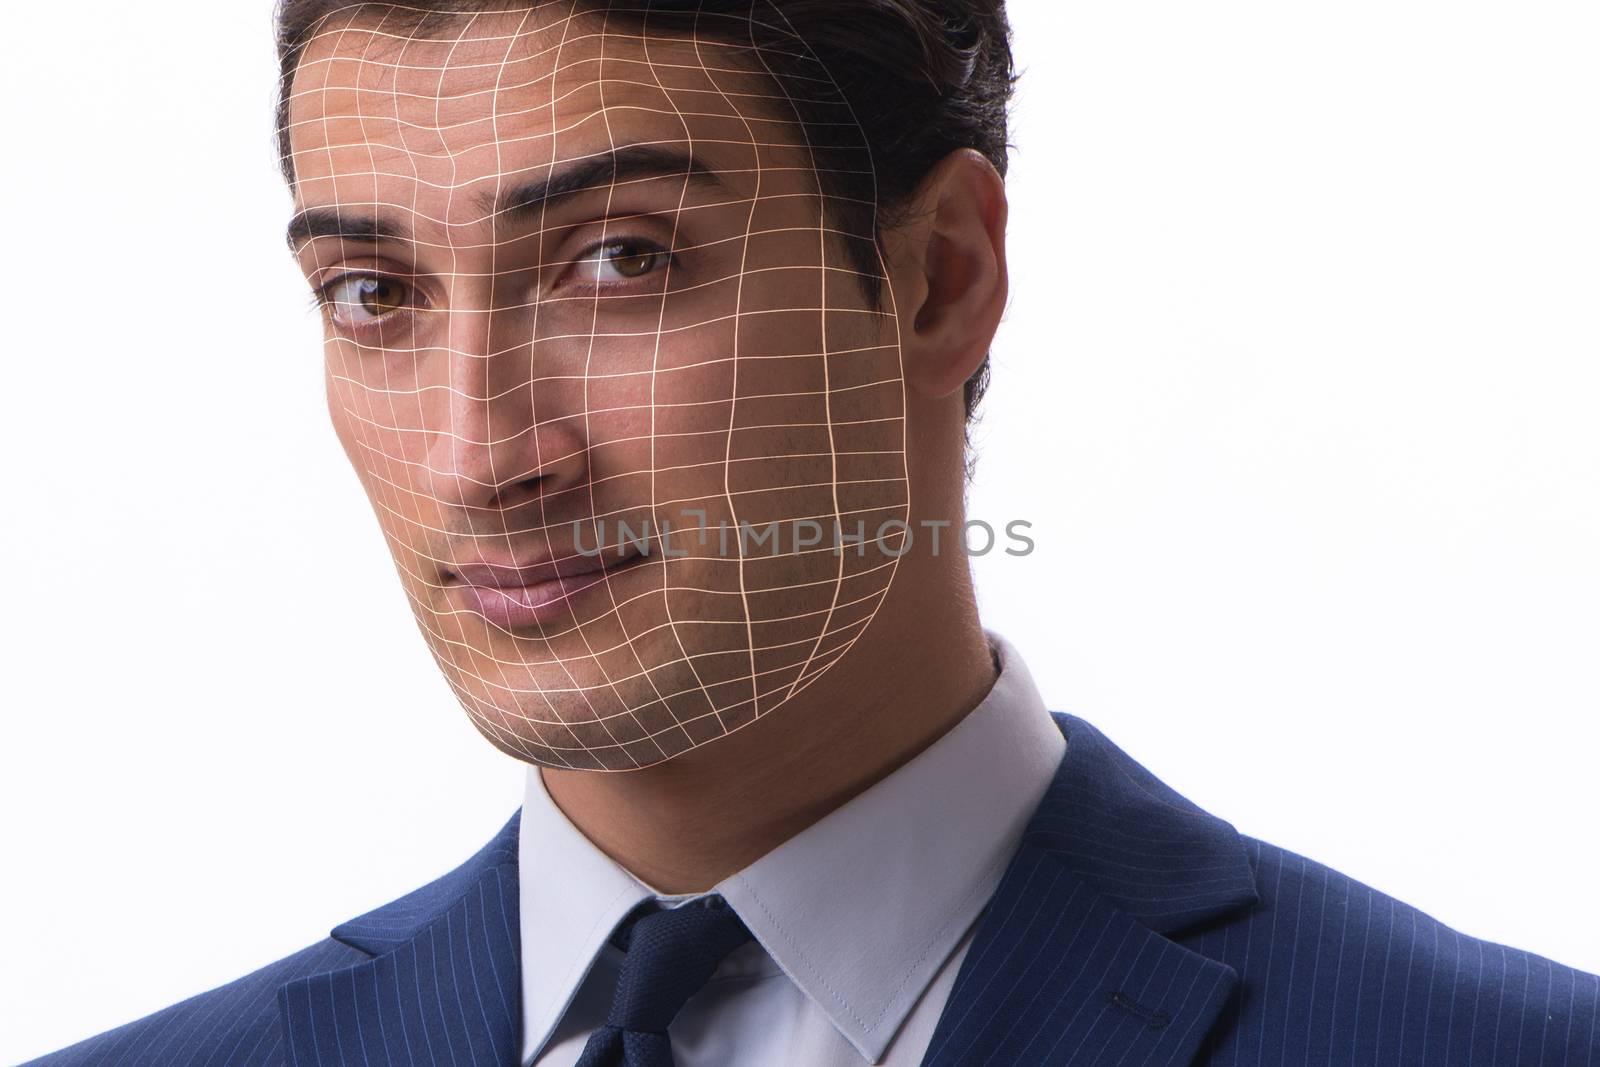 Face recognition concept with businessman portrait